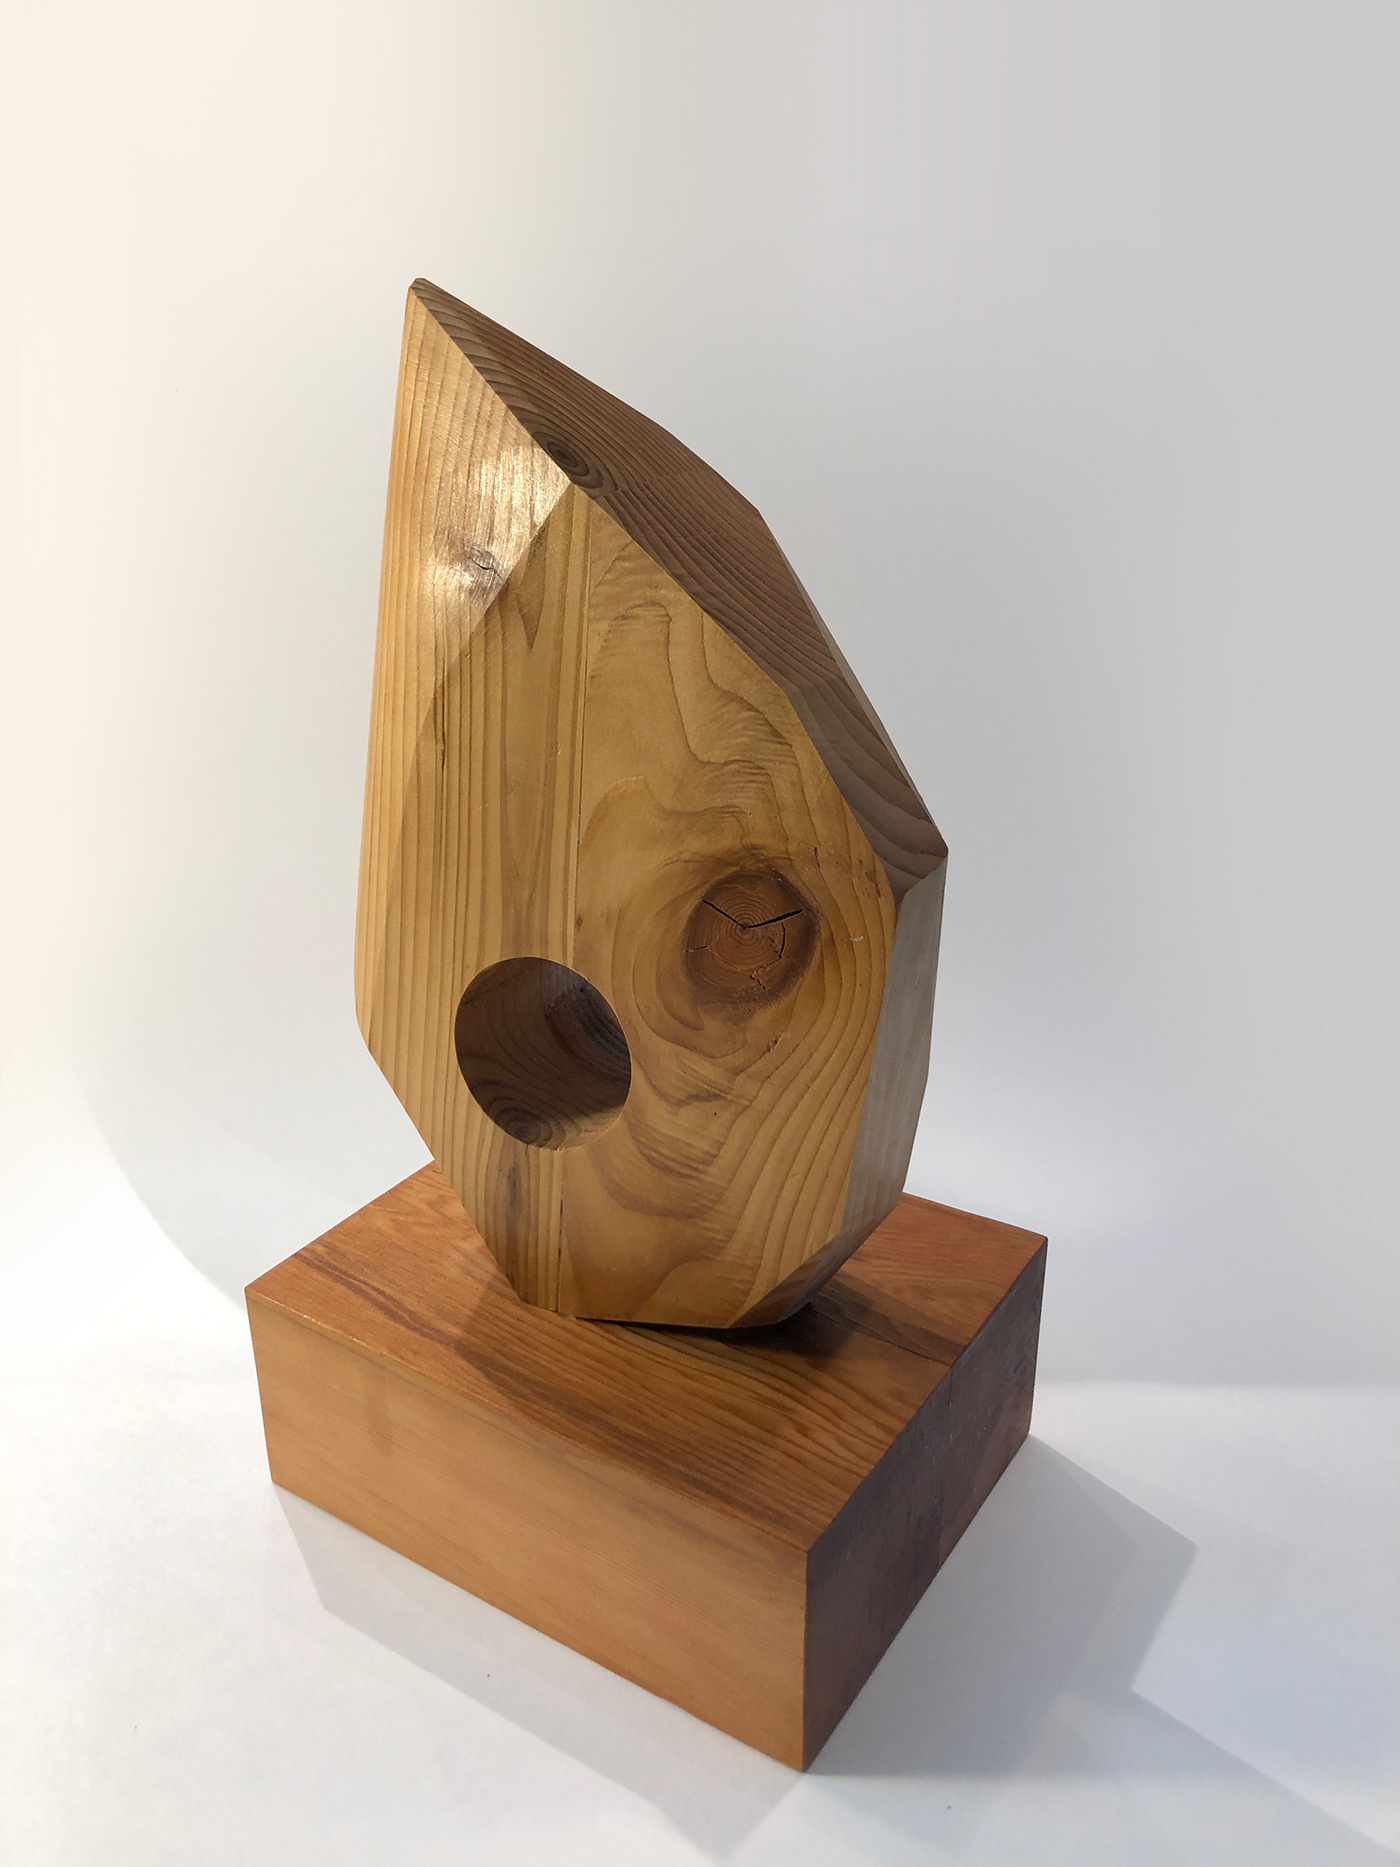 conceptualsculpture handcrafted sculpture unwantedchange wood woodensculpture